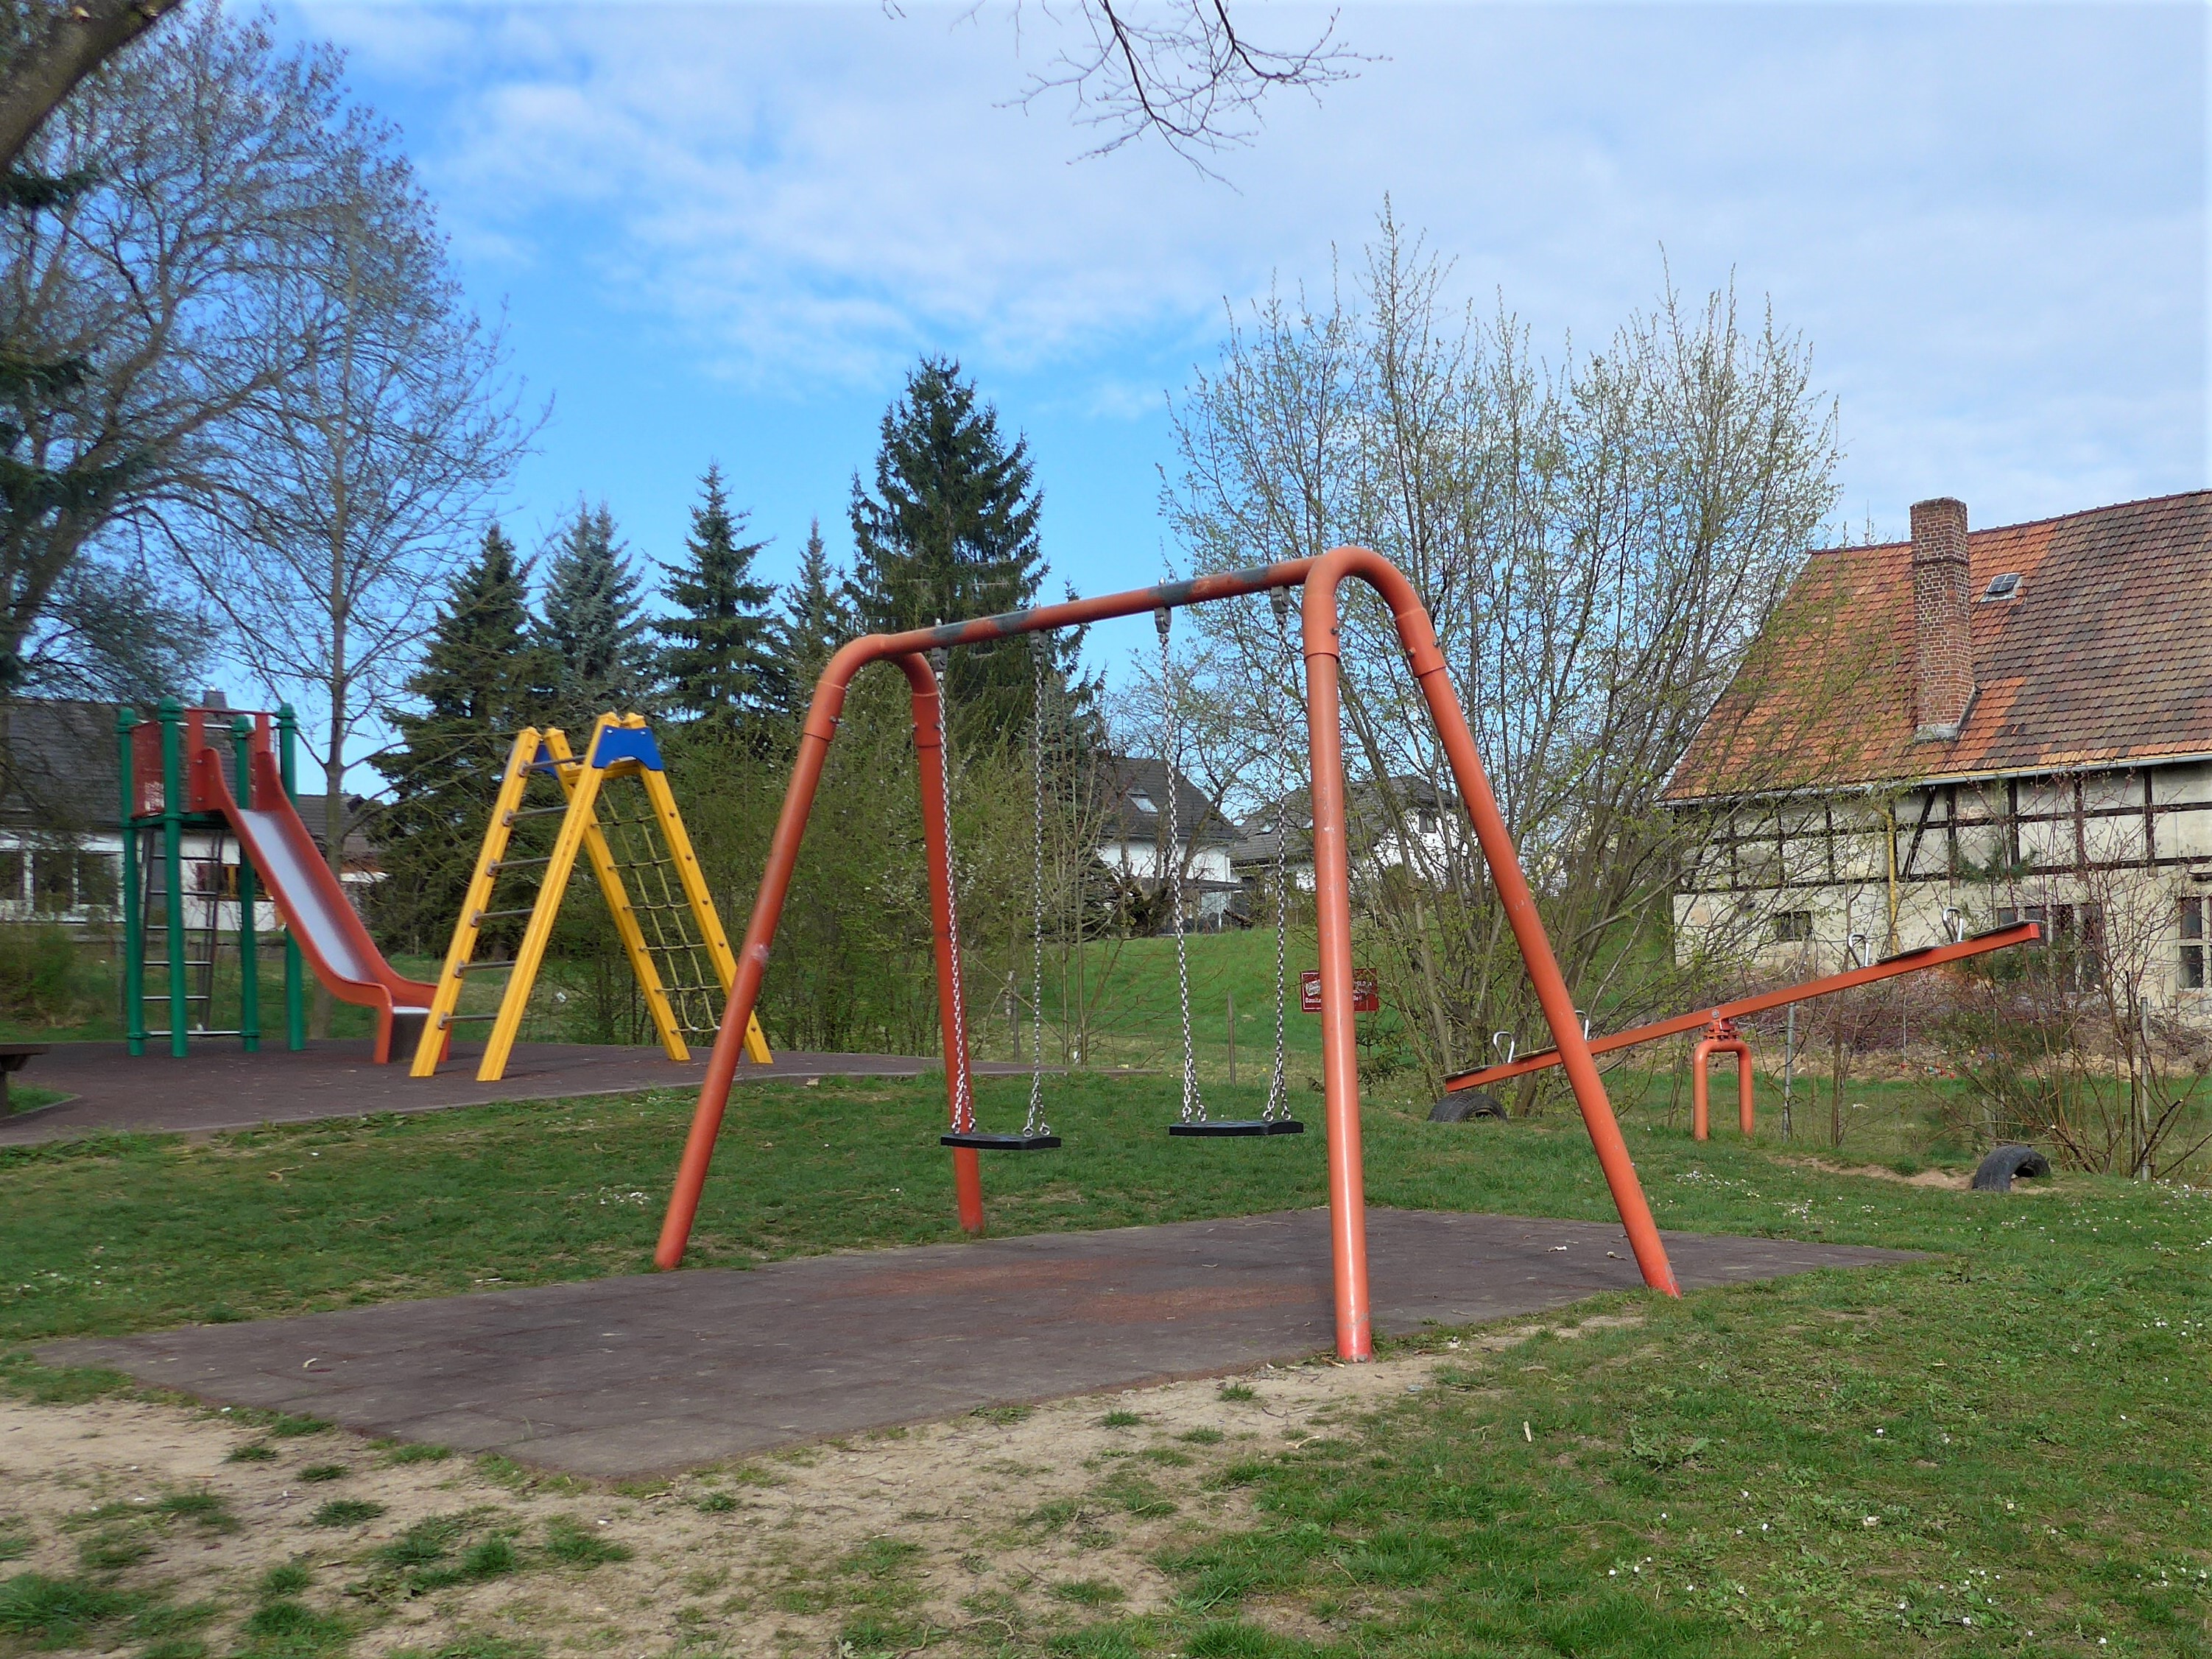 Spielplatz in Mülsen St. Jacob mit Wippe viersitzig, 3 Bänke, Sandkasten, Federwipptier, Kletterkombi, Leiterturm mit Rutsche